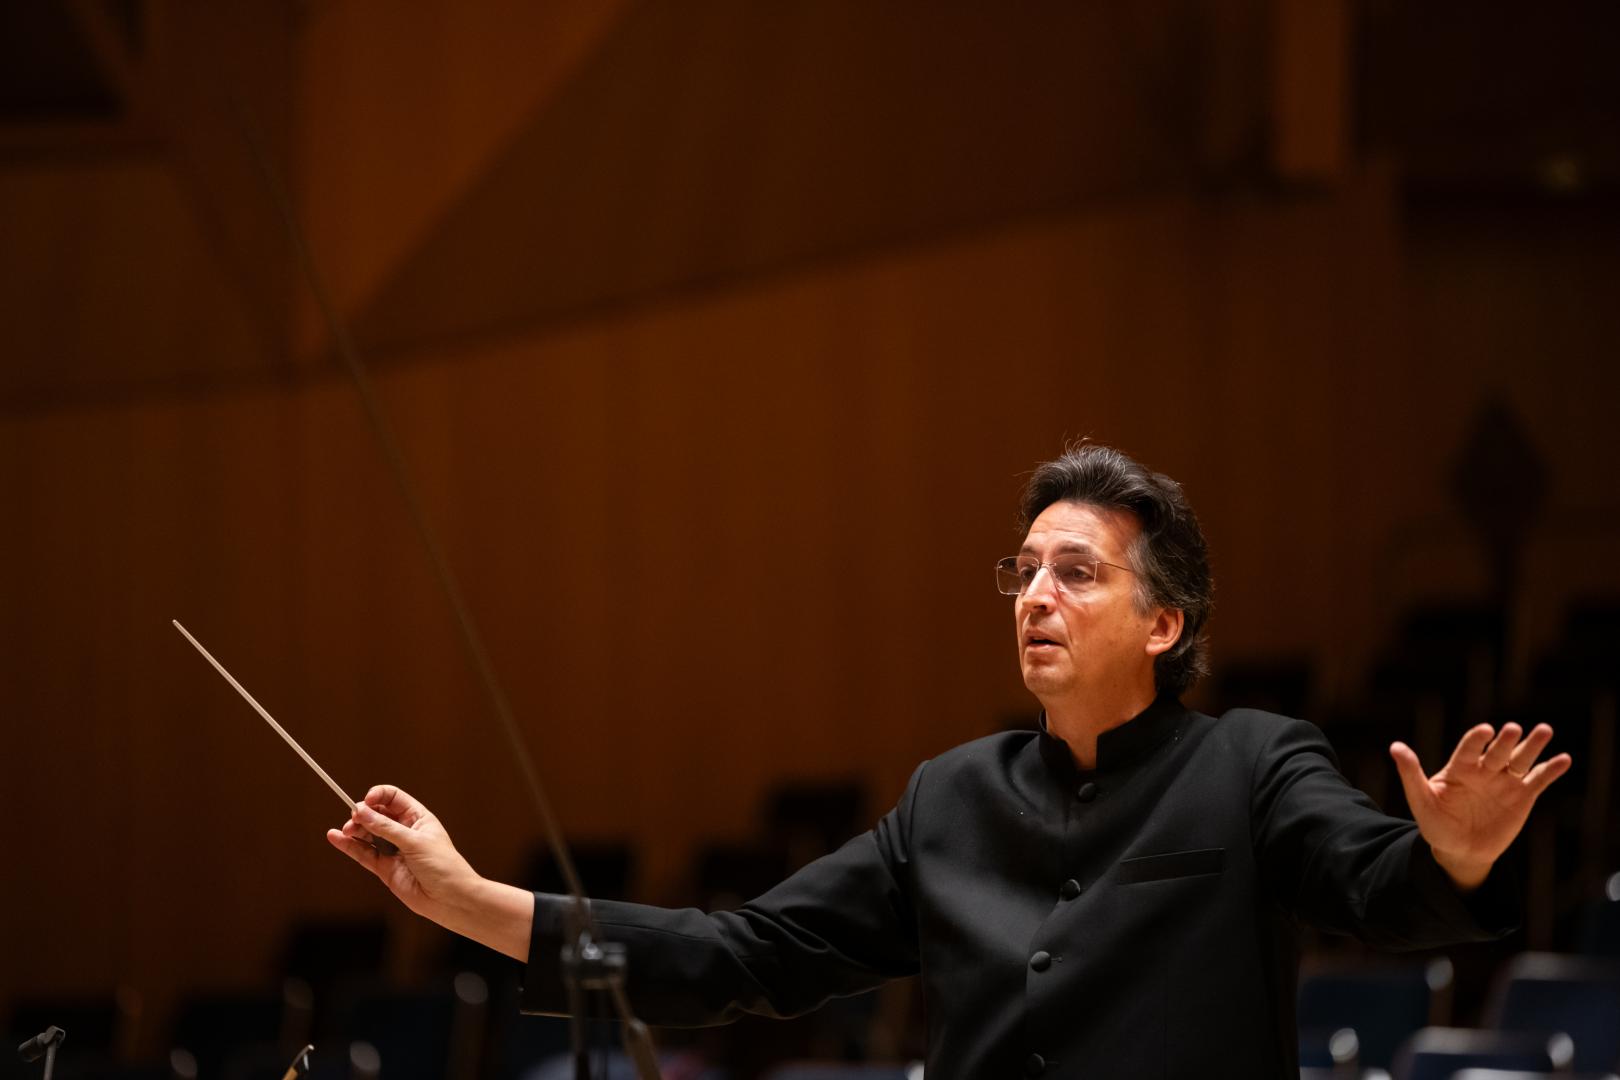 Dirigent Michael Sanderling